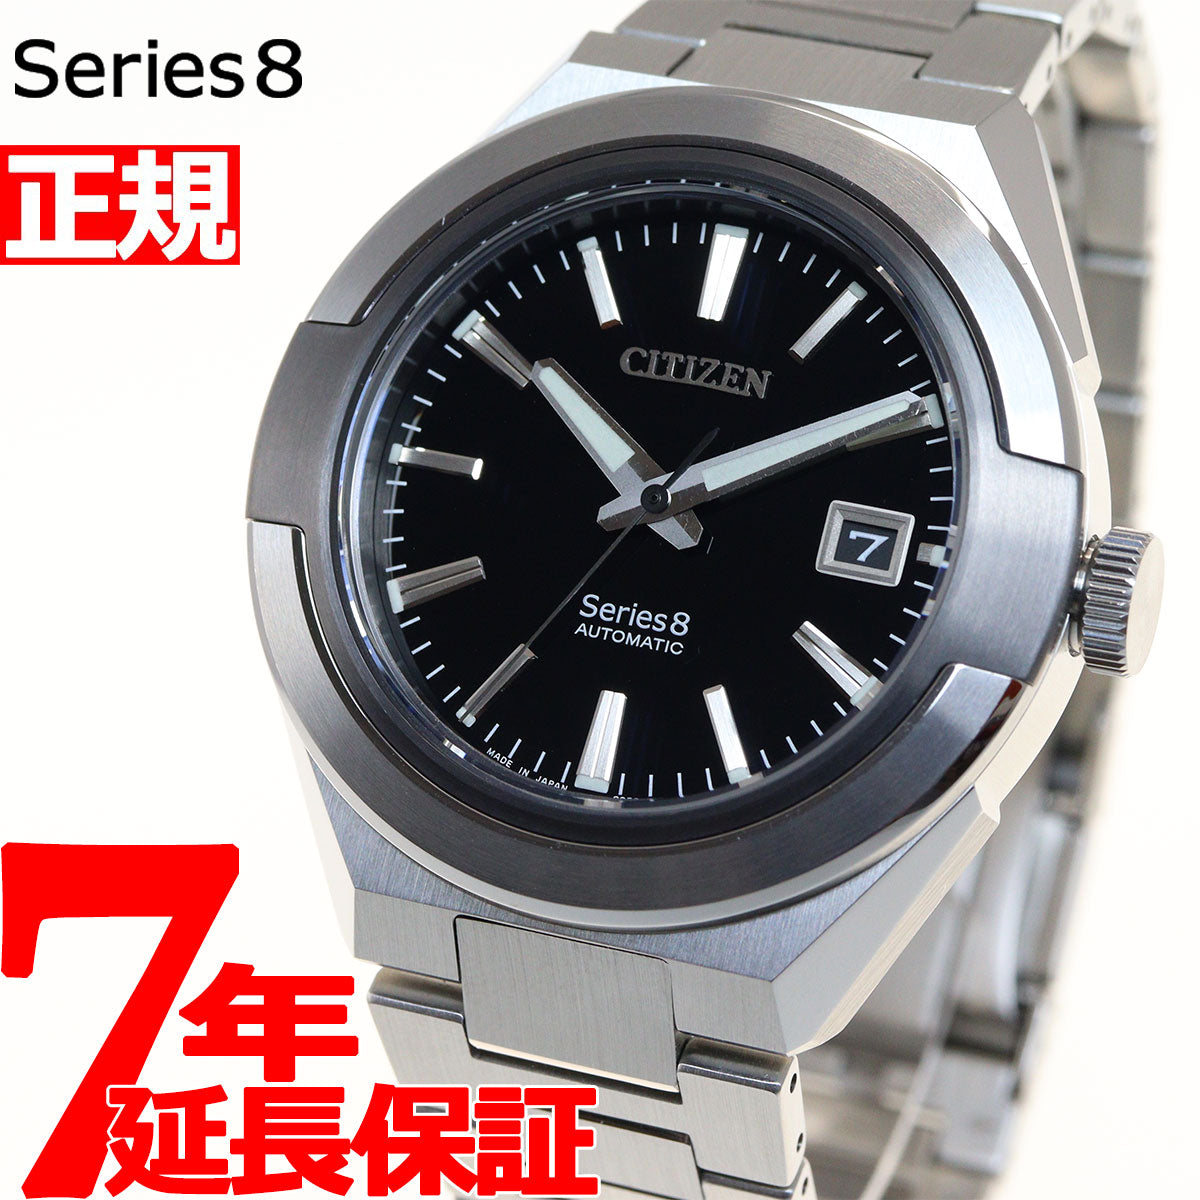 シチズン シリーズエイト CITIZEN Series 8 メカニカル 870 自動巻き 機械式 腕時計 メンズ  NA1004-87E【36回無金利ローン】